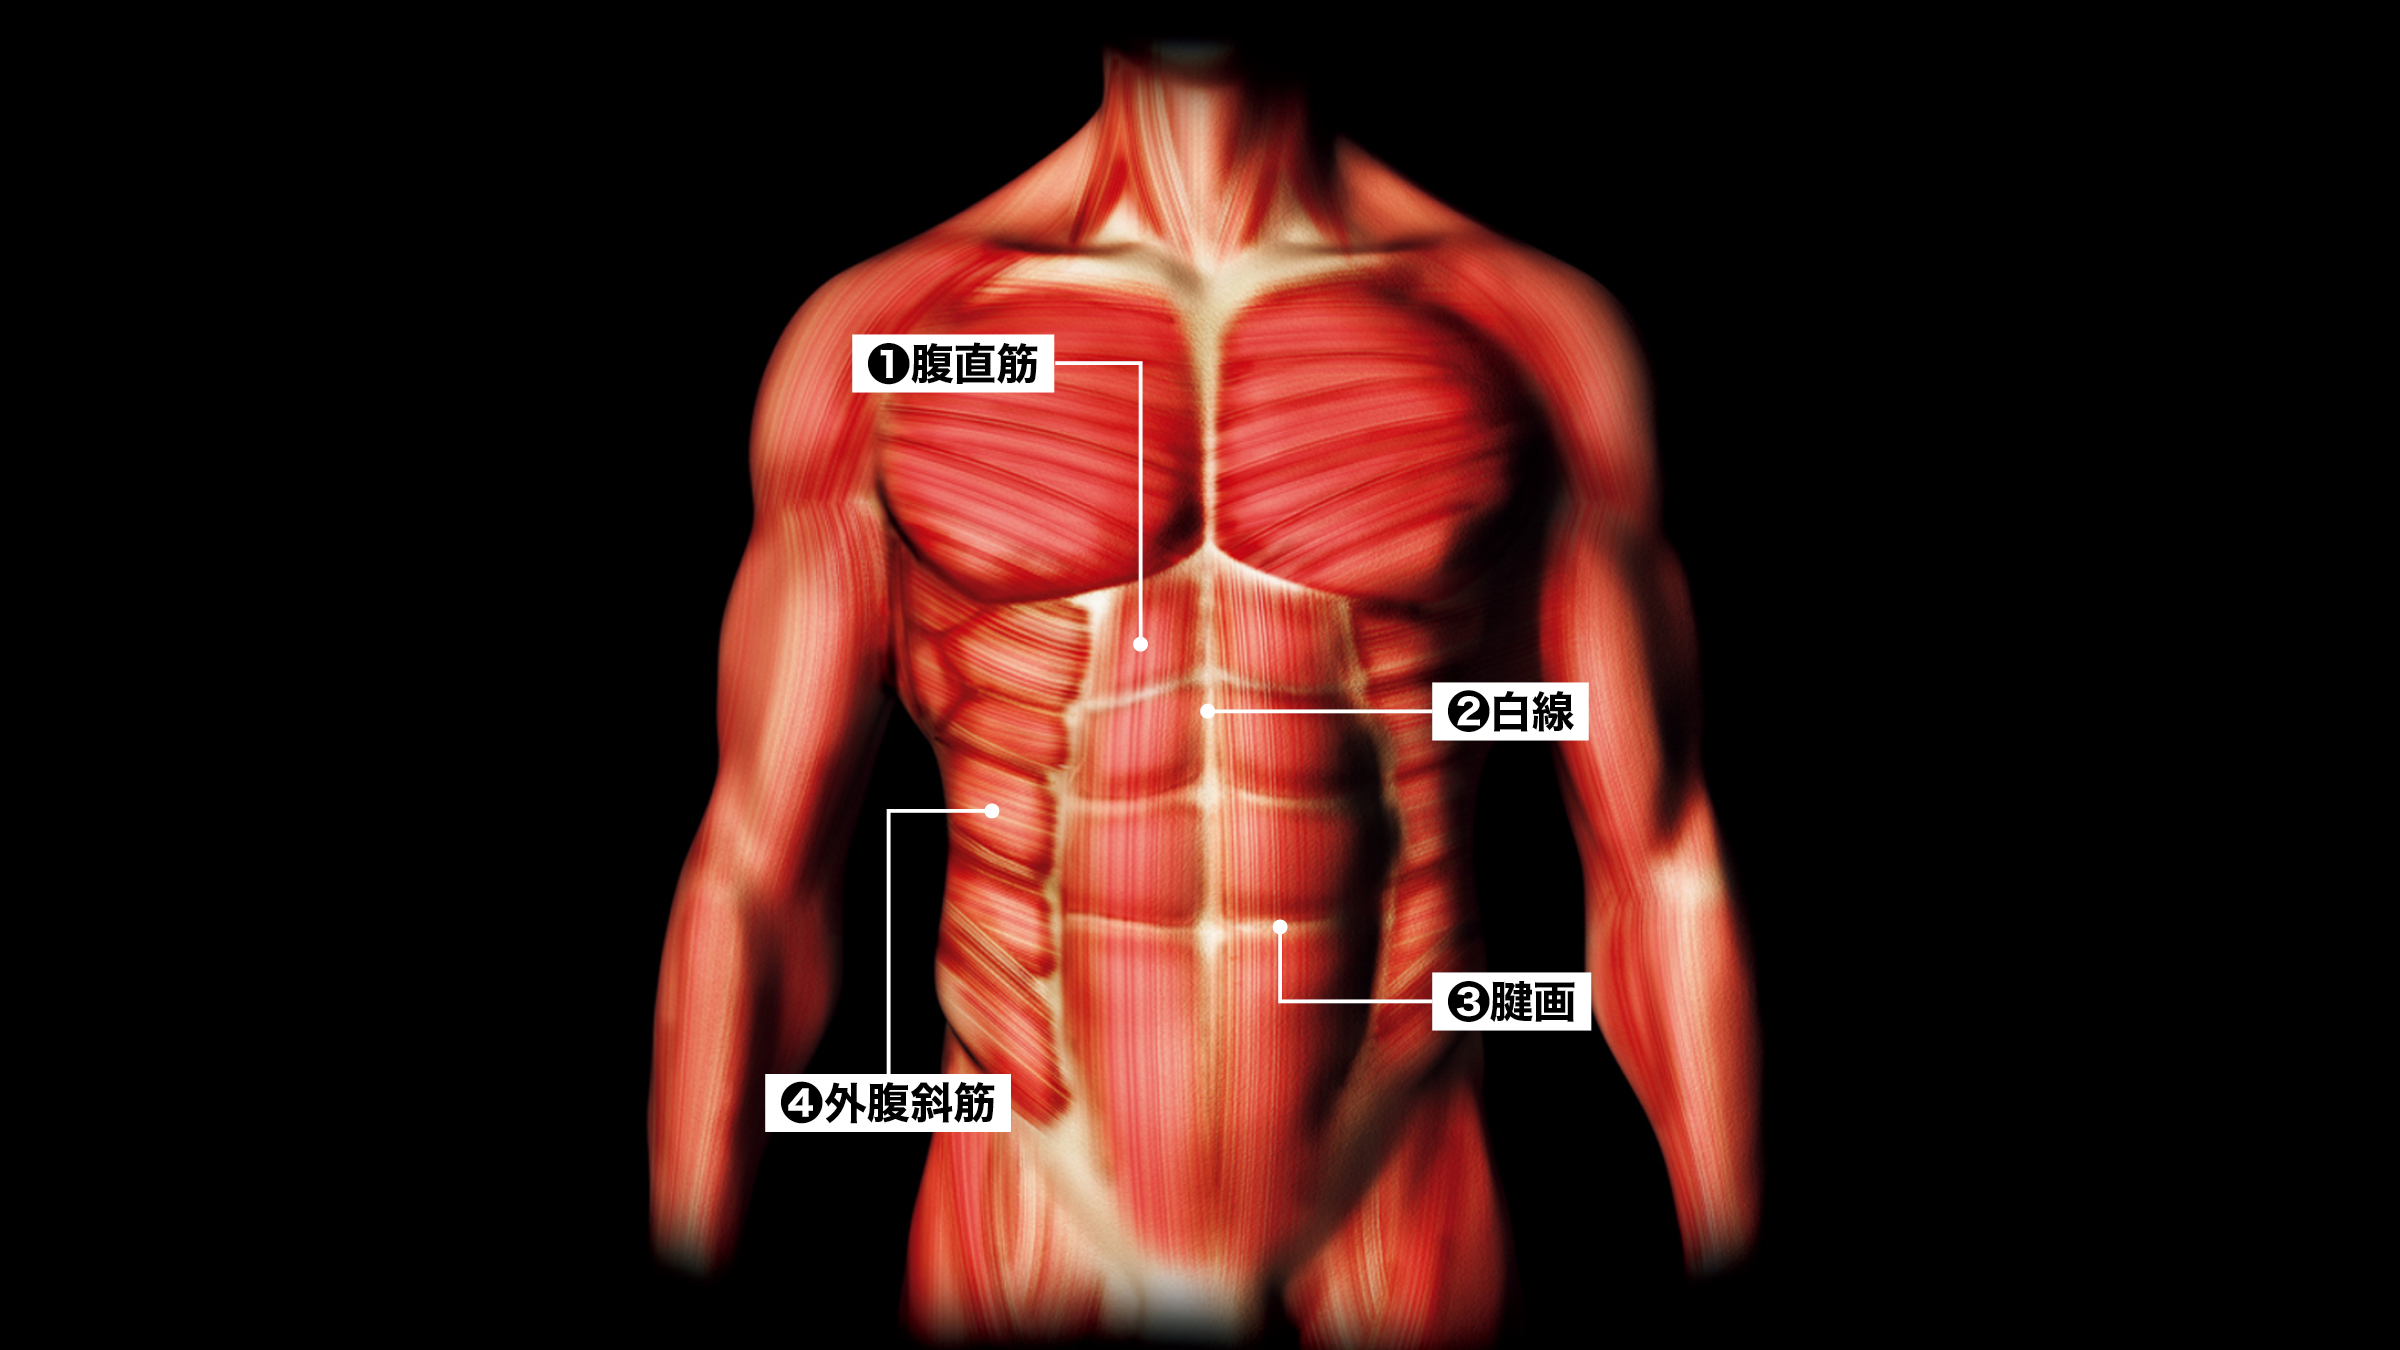 腹筋の構造